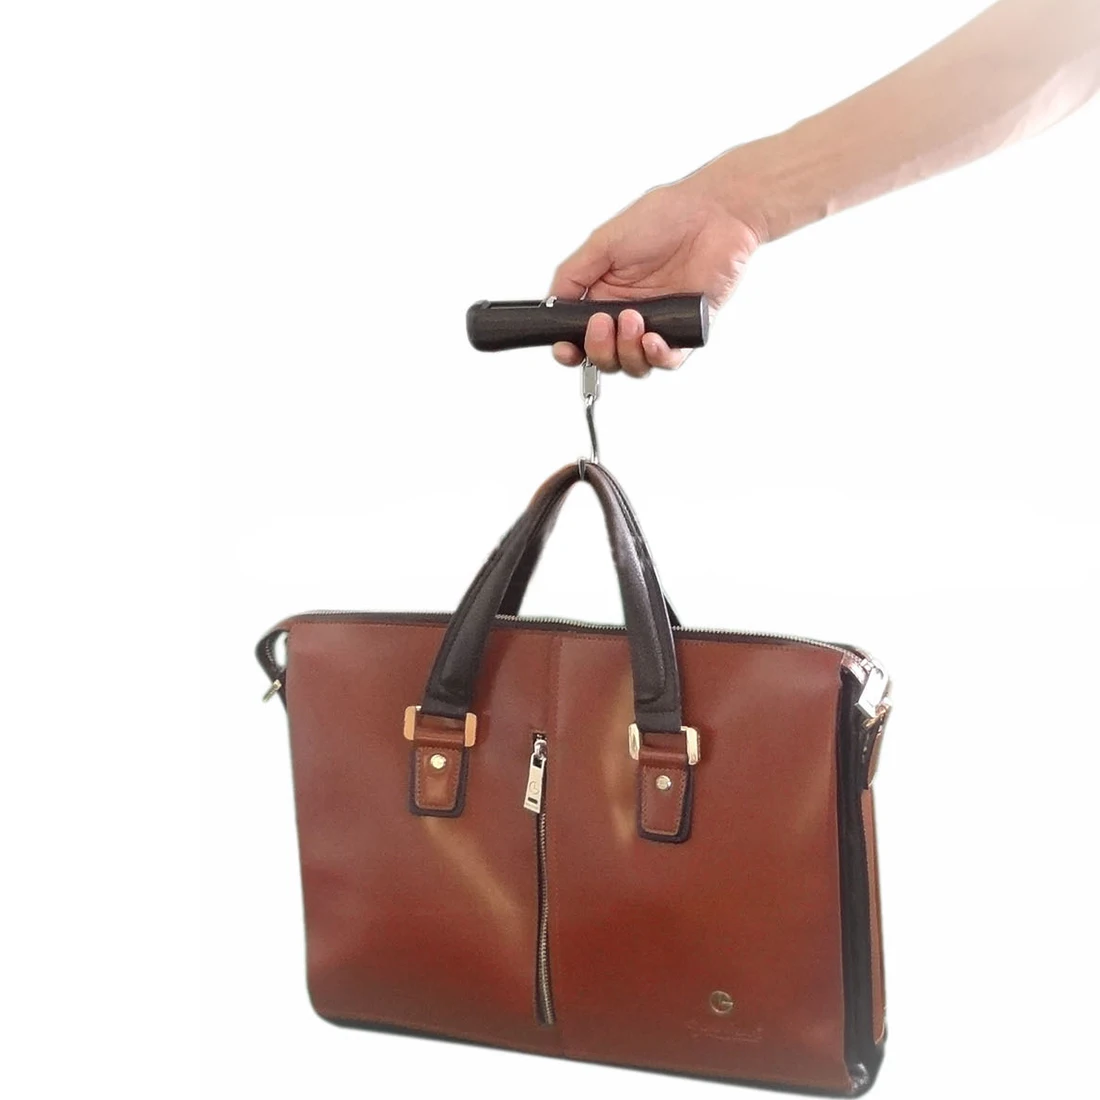 ЖК-дисплей подсветкой 40 кг дорожный переносной багаж чемодан сумка Вес цифровые кухонные весы с крючком